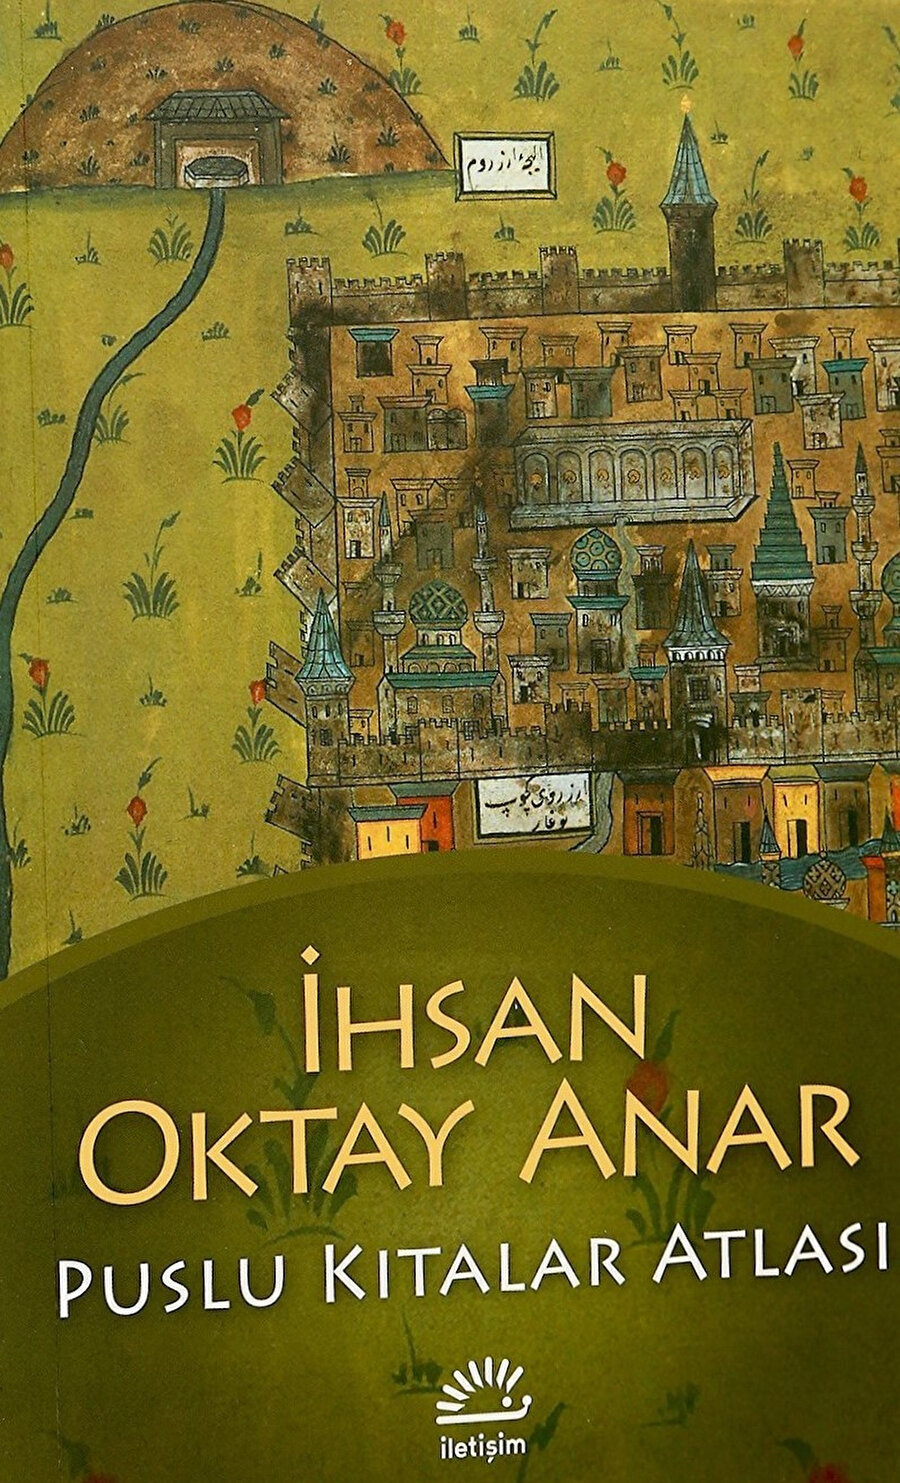 İhsan Oktay Anar, Puslu Kıtalar Atlası, İletişim Yayınları.